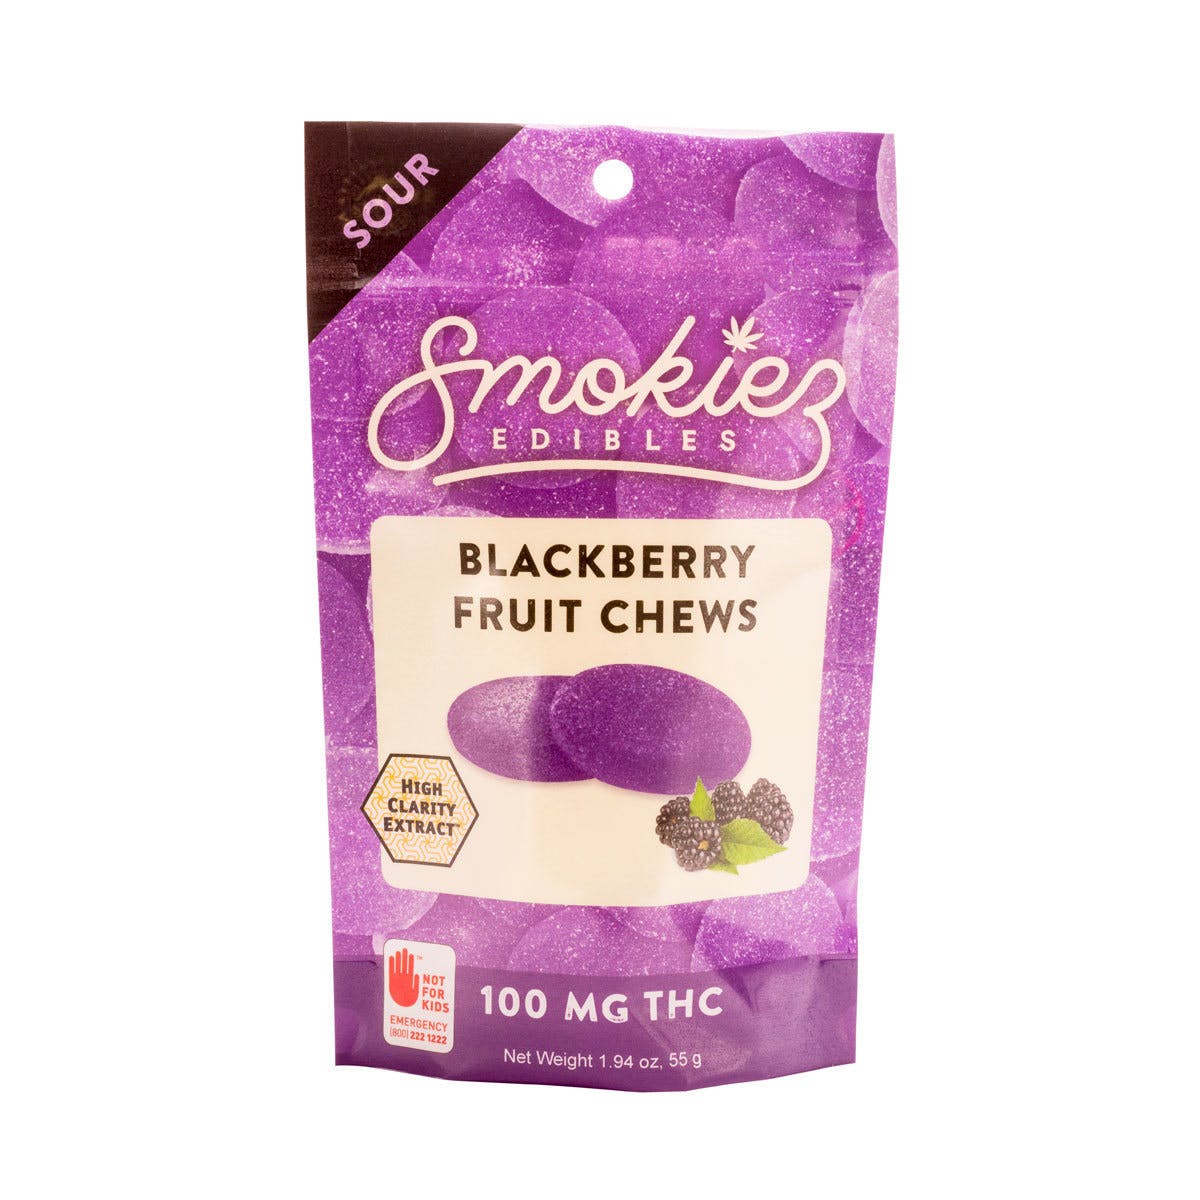 marijuana-dispensaries-mspc-in-mt-shasta-sour-blackberry-fruit-chews-2c-100-mg